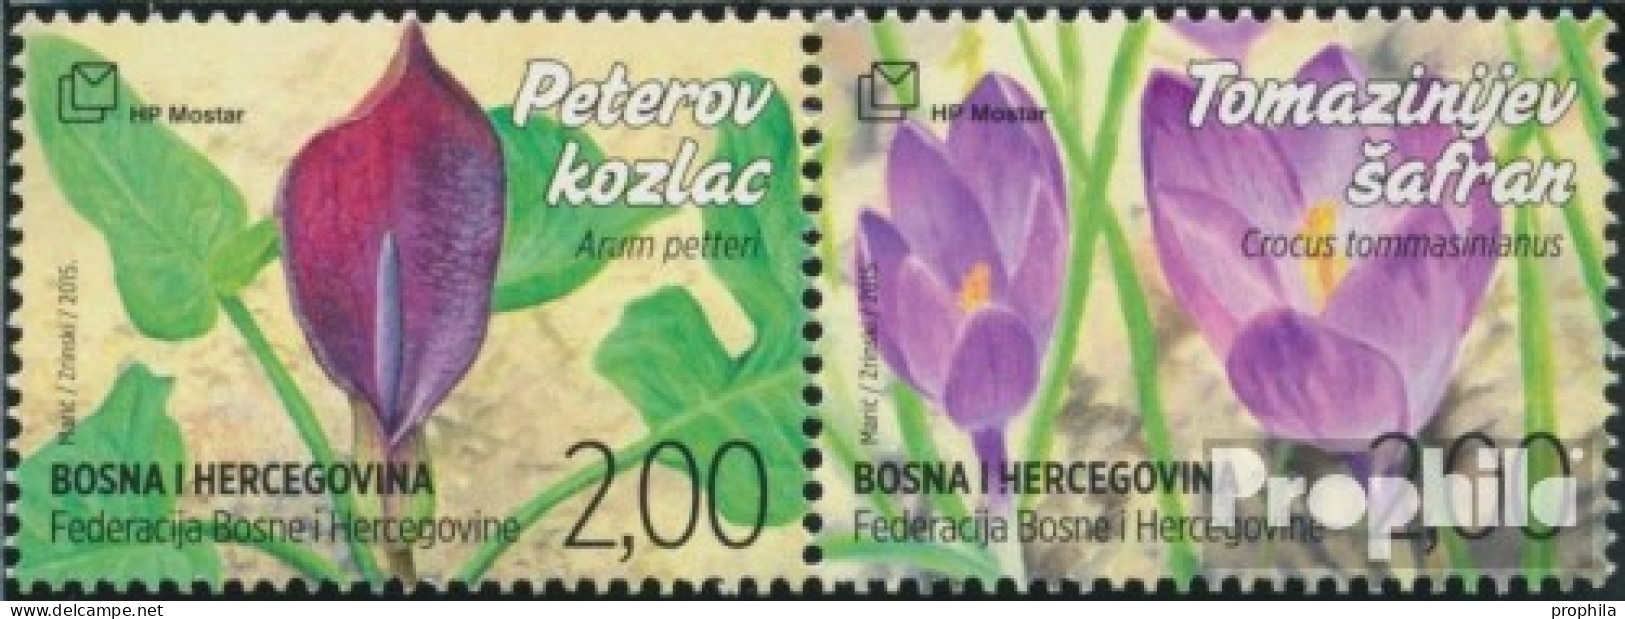 Bosnien - Kroat. Post Mostar 419-420 Paar (kompl.Ausg.) Postfrisch 2015 Flora - Bosnien-Herzegowina